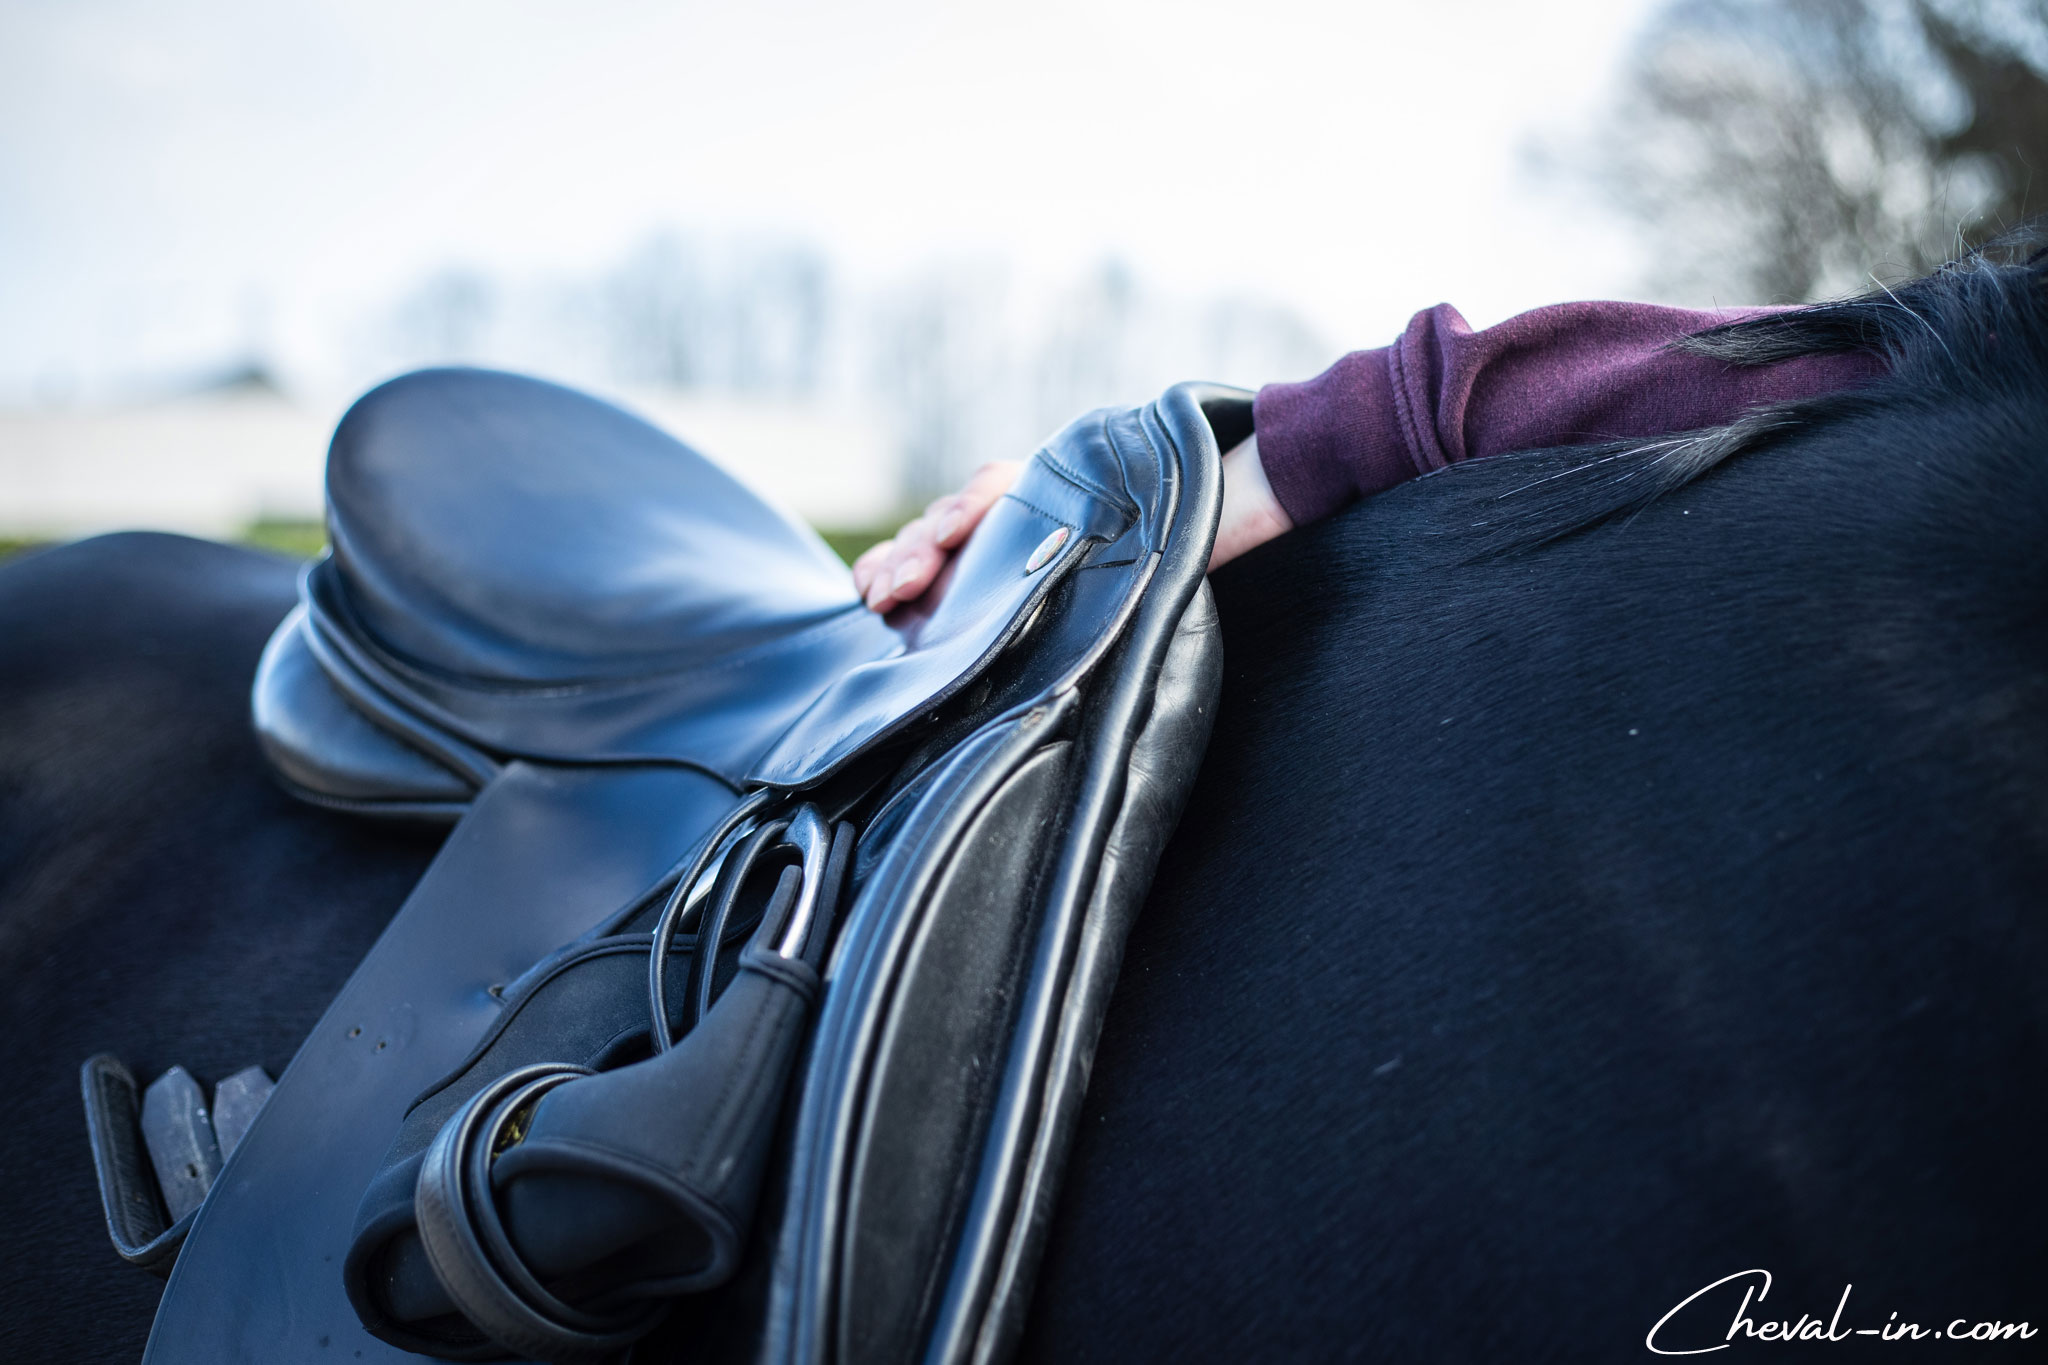 Comment savoir si sa selle est adaptée à son cheval ? – Blog